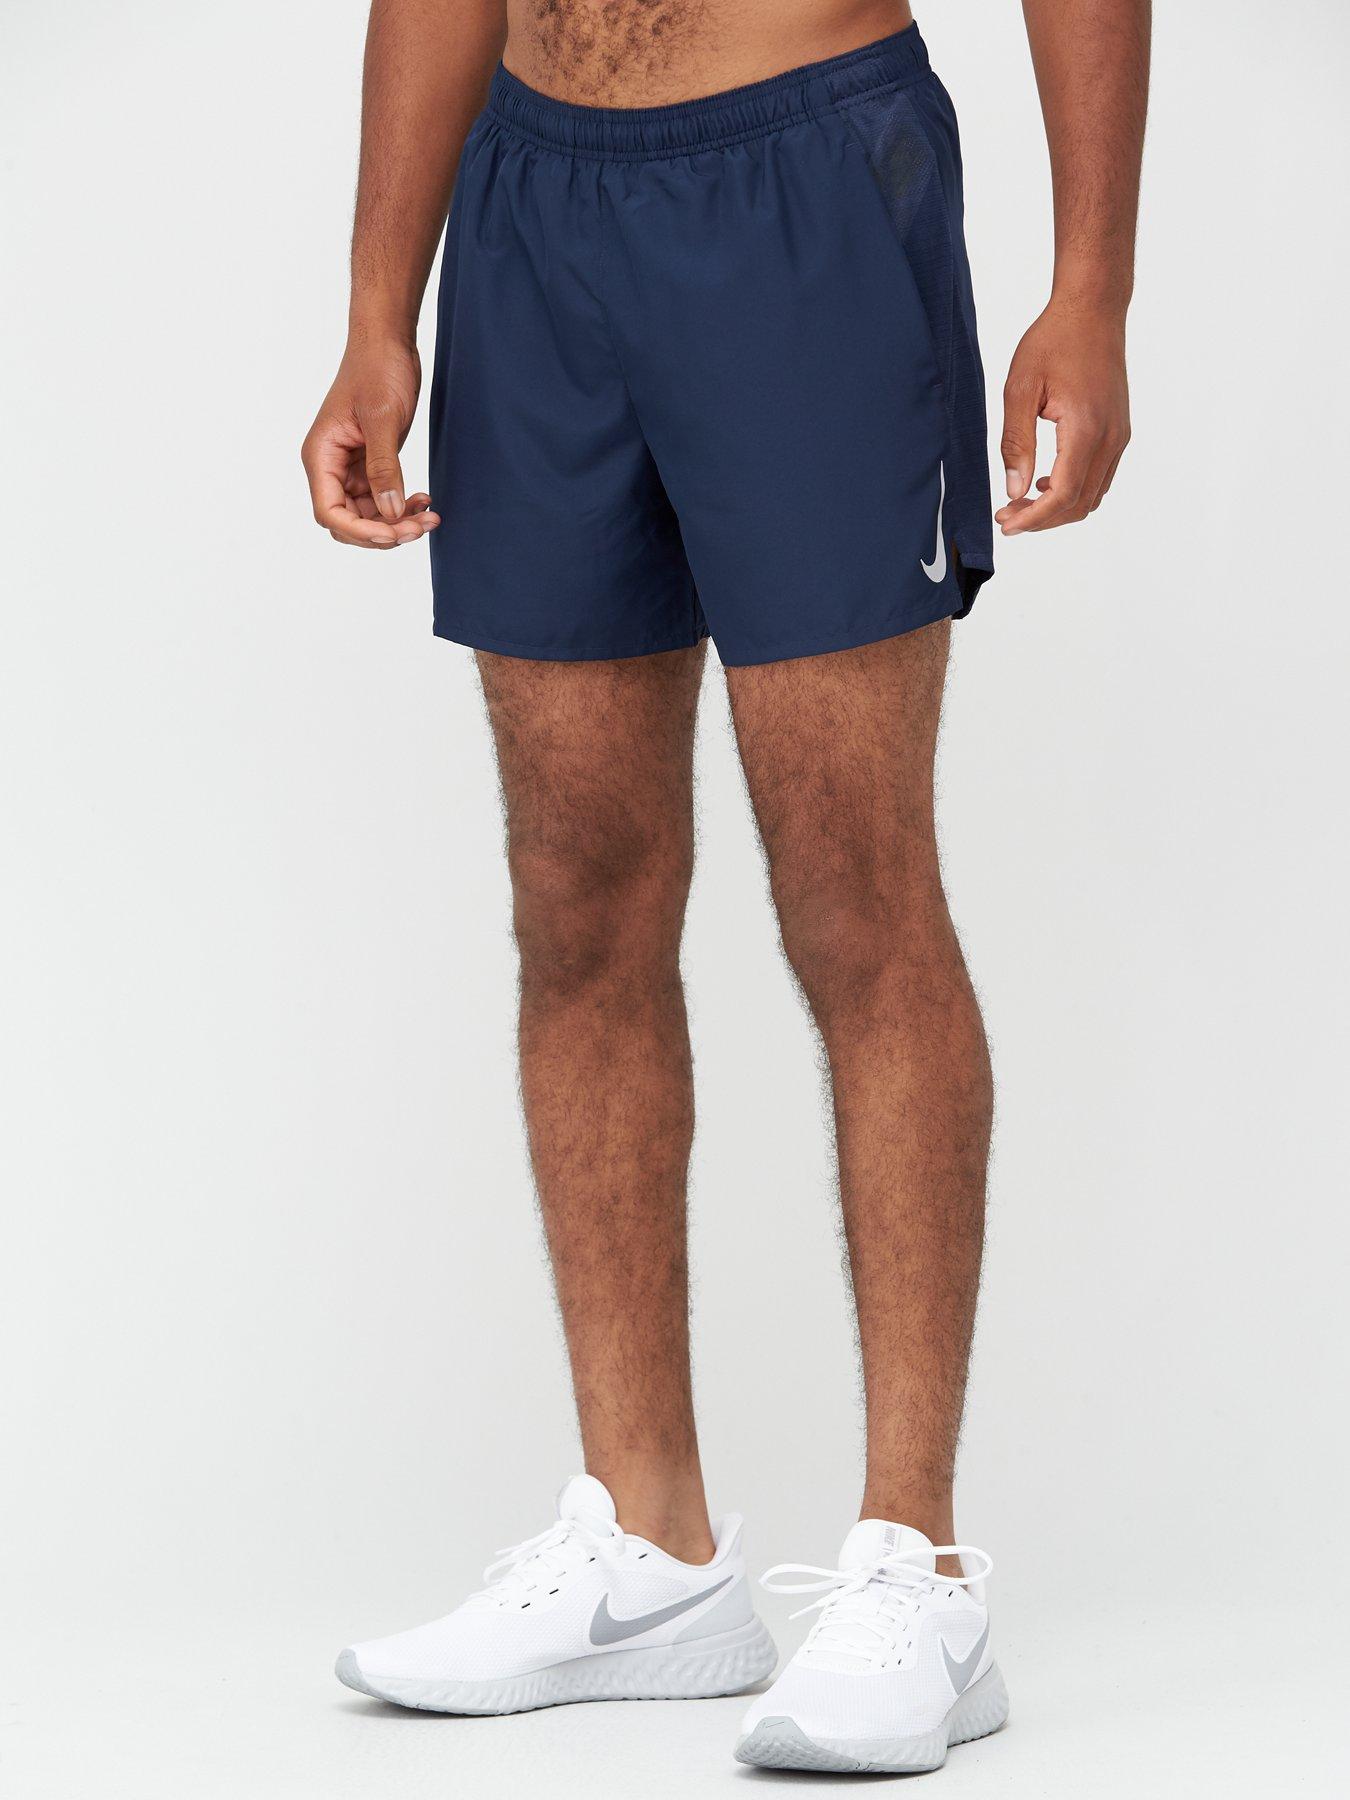 navy nike running shorts